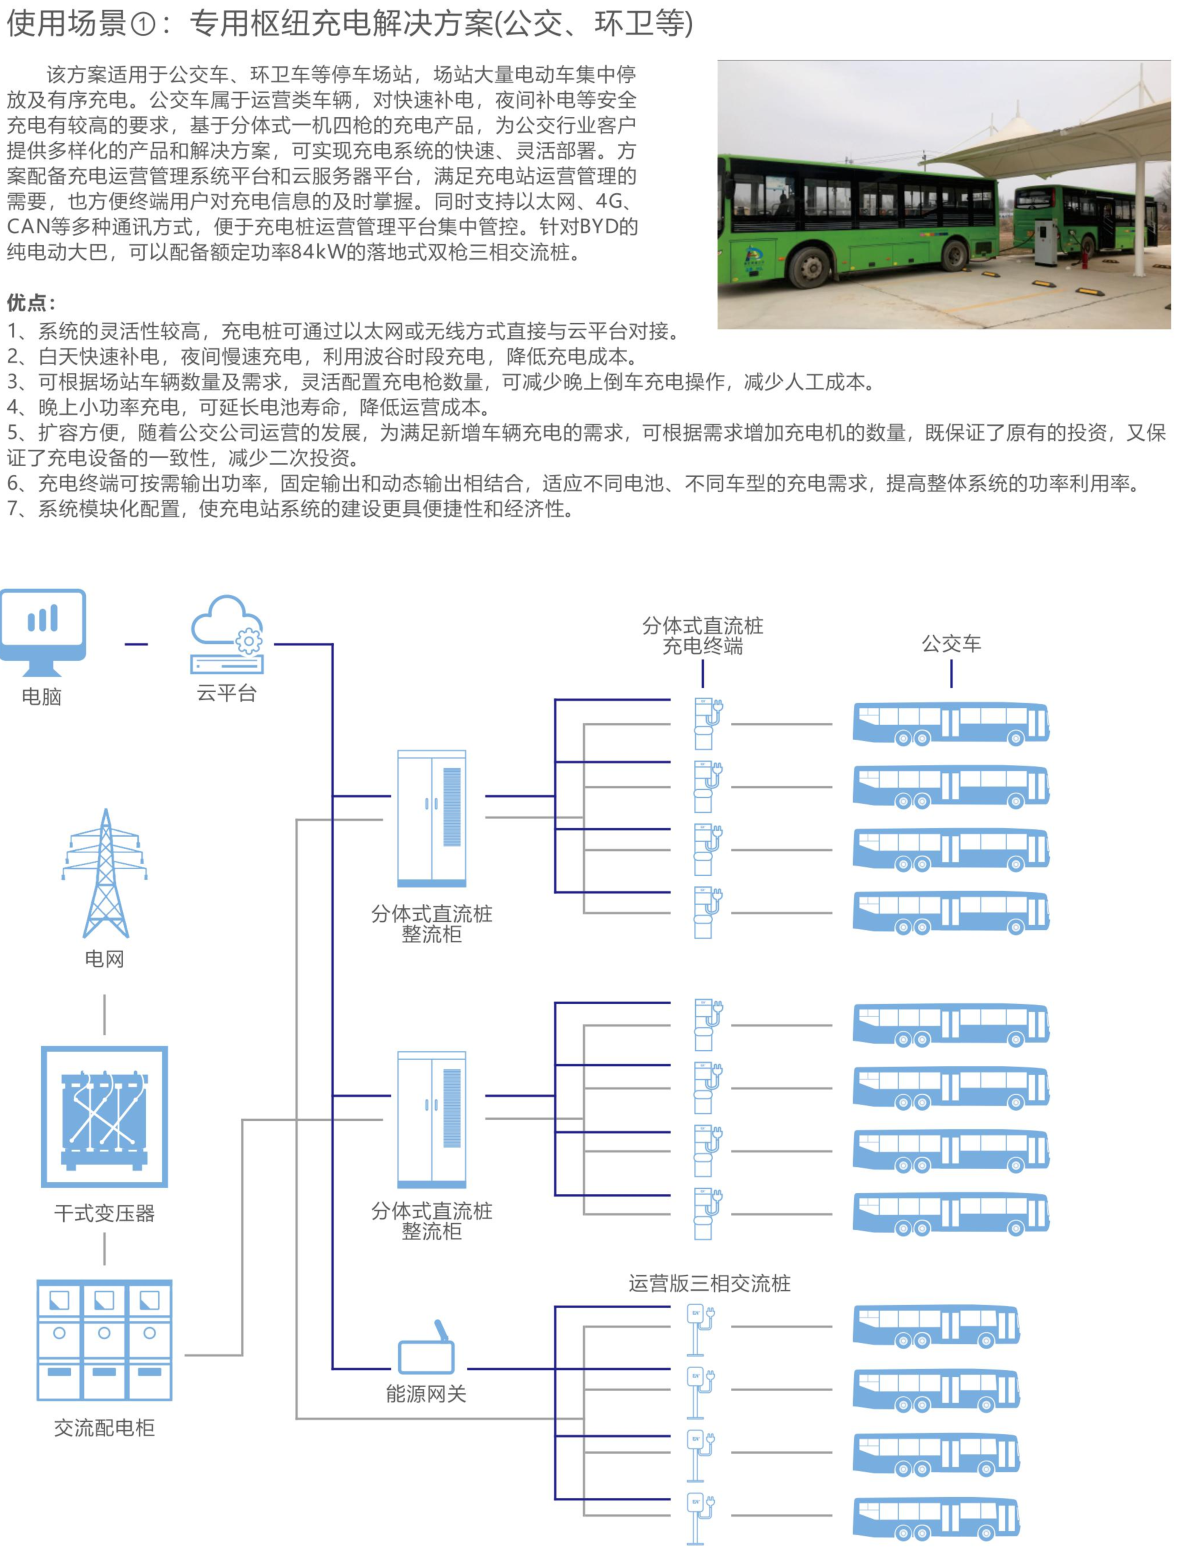 专用枢纽充电解决方案(公交、环卫等)_津太新能源科技